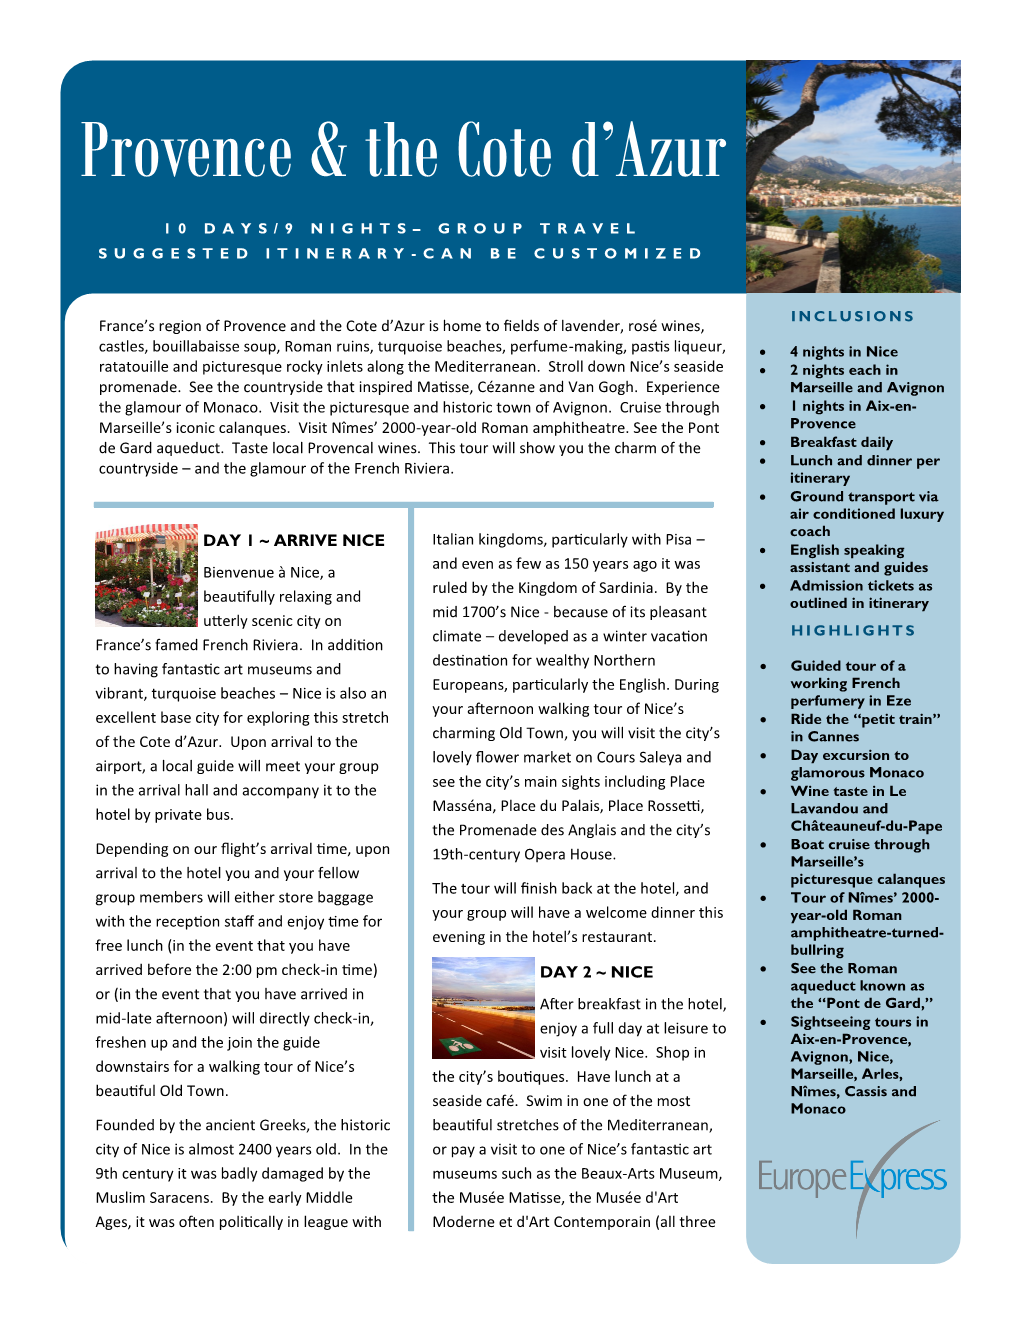 Provence & the Cote D'azur